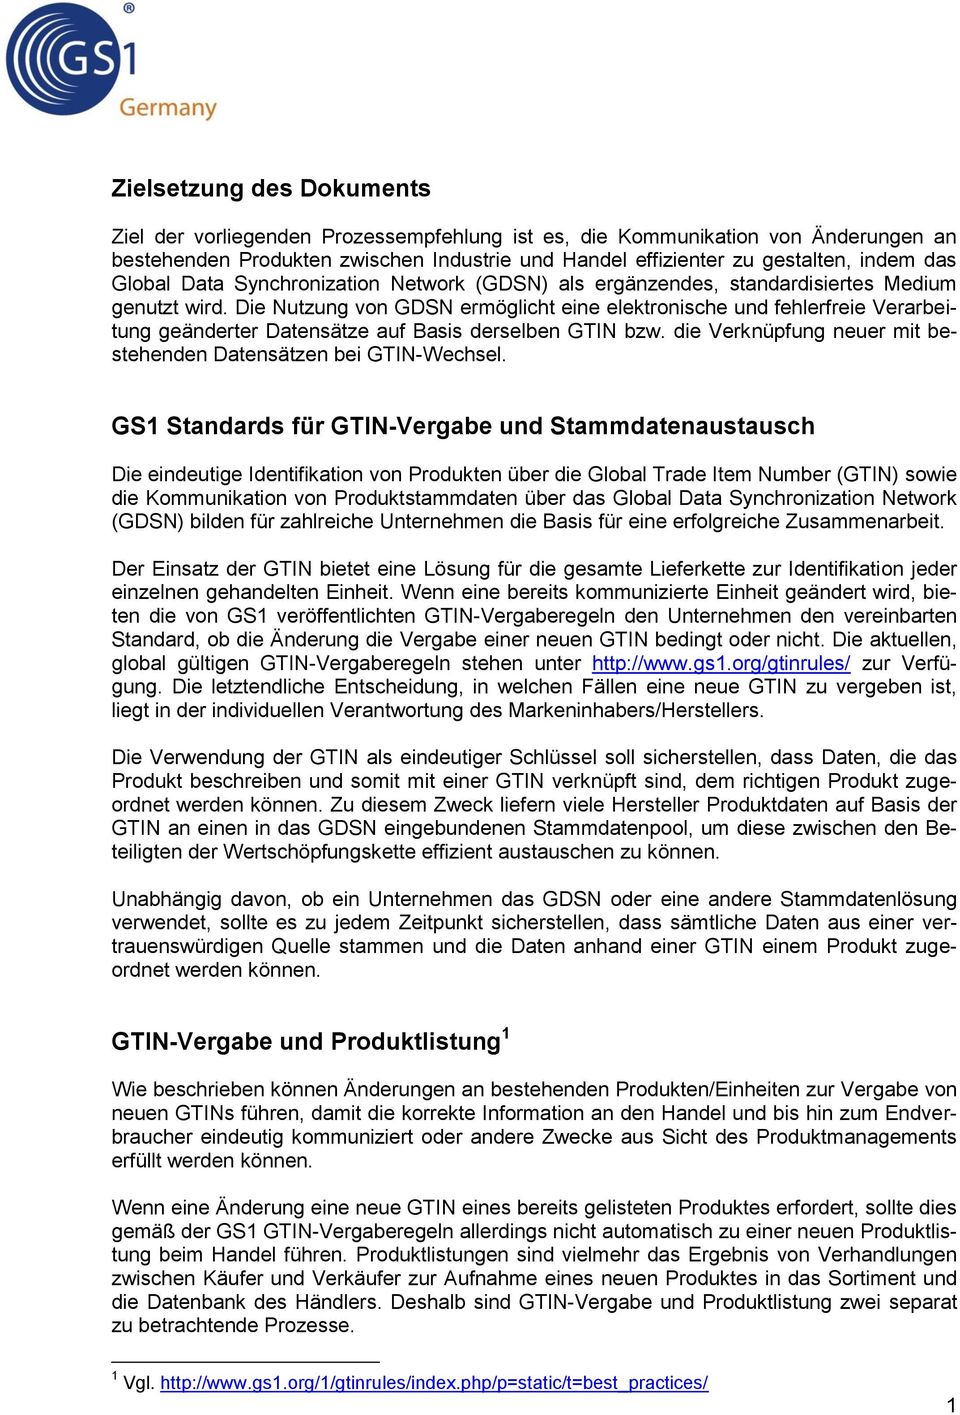 Die Nutzung von GDSN ermöglicht eine elektronische und fehlerfreie Verarbeitung geänderter Datensätze auf Basis derselben GTIN bzw. die Verknüpfung neuer mit bestehenden Datensätzen bei GTIN-Wechsel.